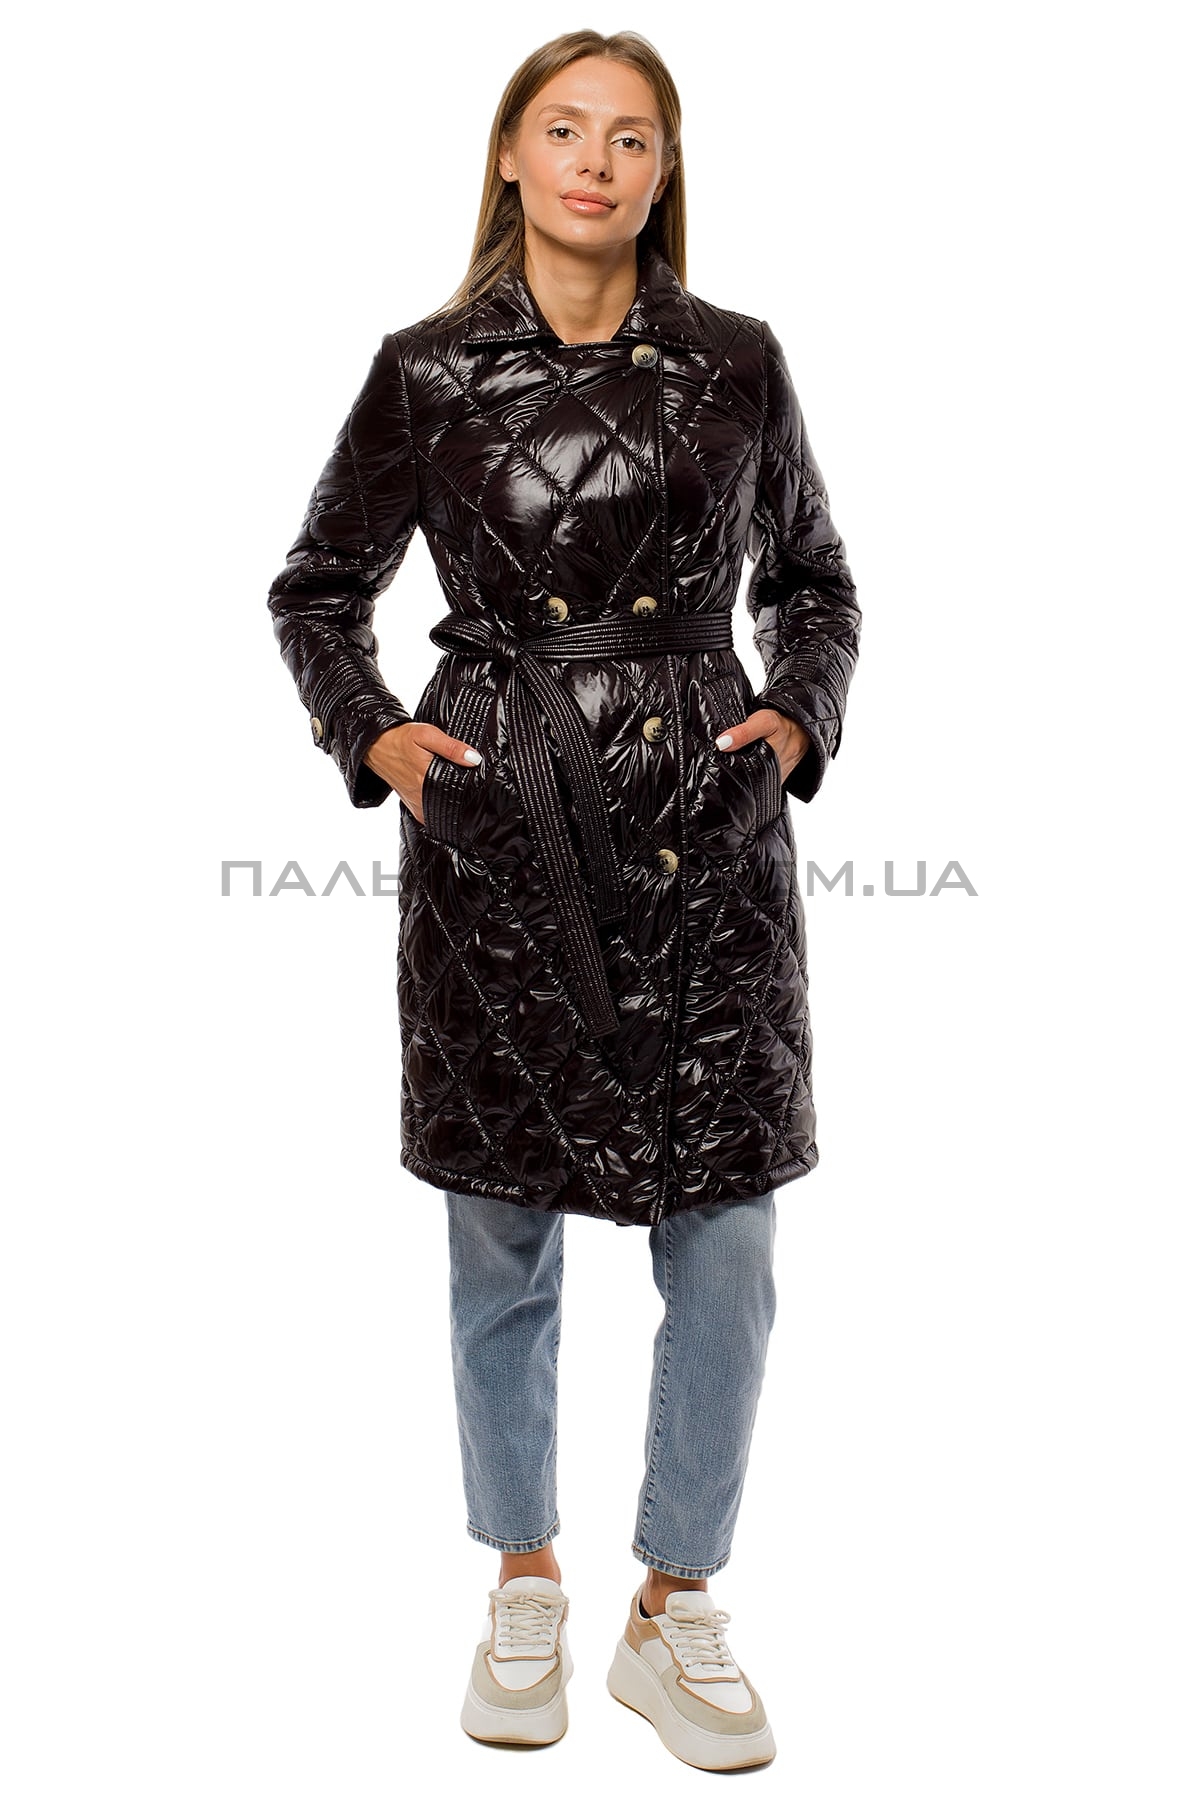  Женкская куртка перламутровая черная с поясом